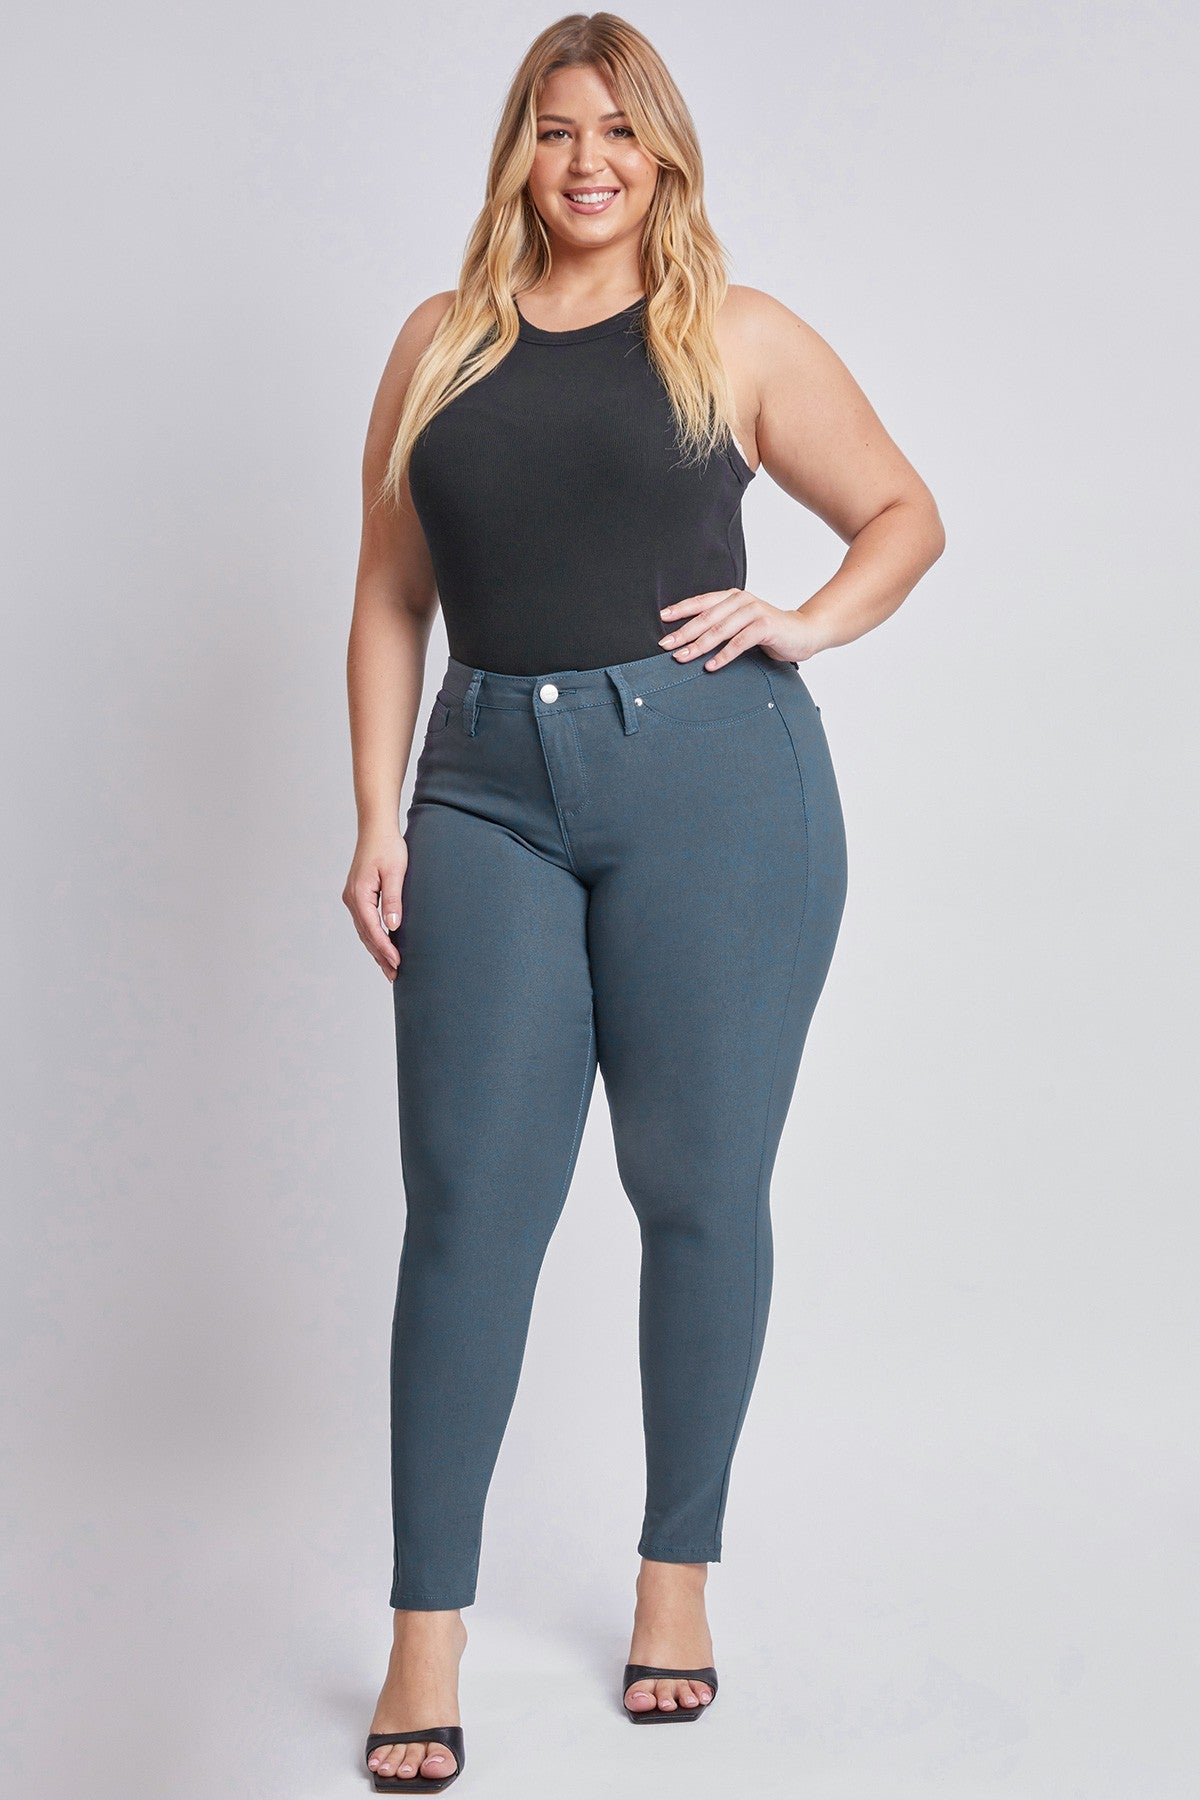 Zenana Outfitters Leggings Pants Nylon/Spandex Size 1X/2X 